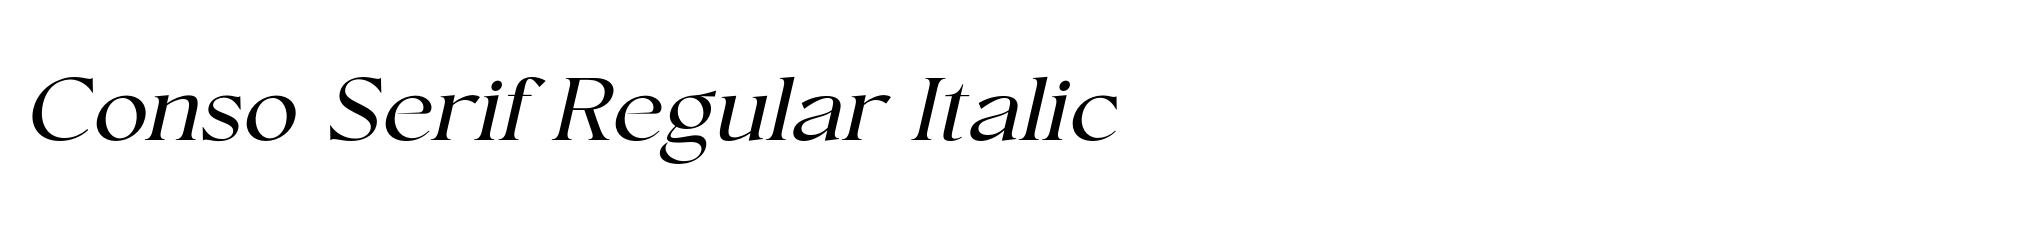 Conso Serif Regular Italic image